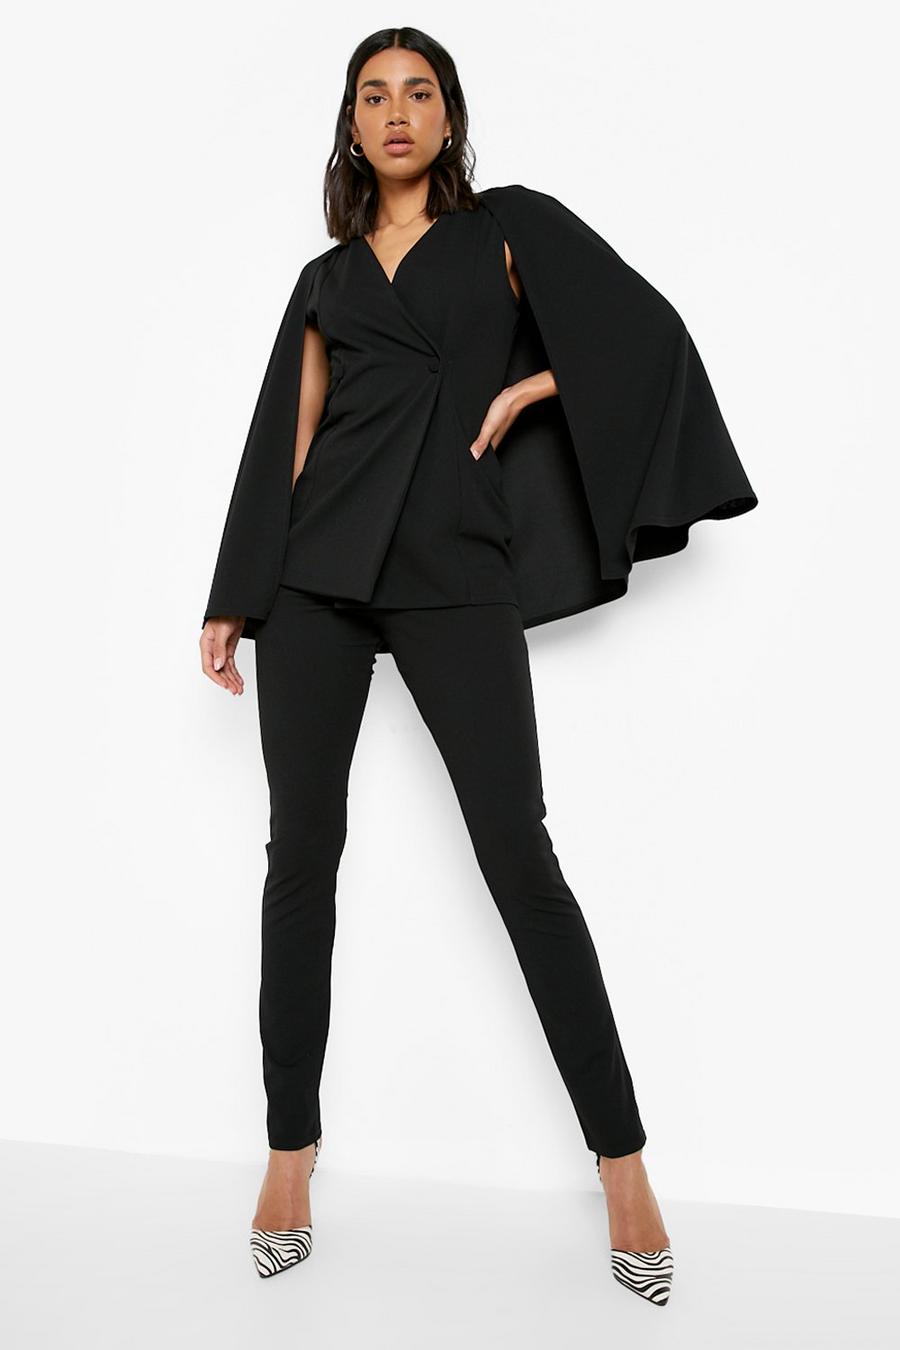 שחור nero חליפה של מכנסיים ובלייזר מעטפת בסגנון שכמייה 